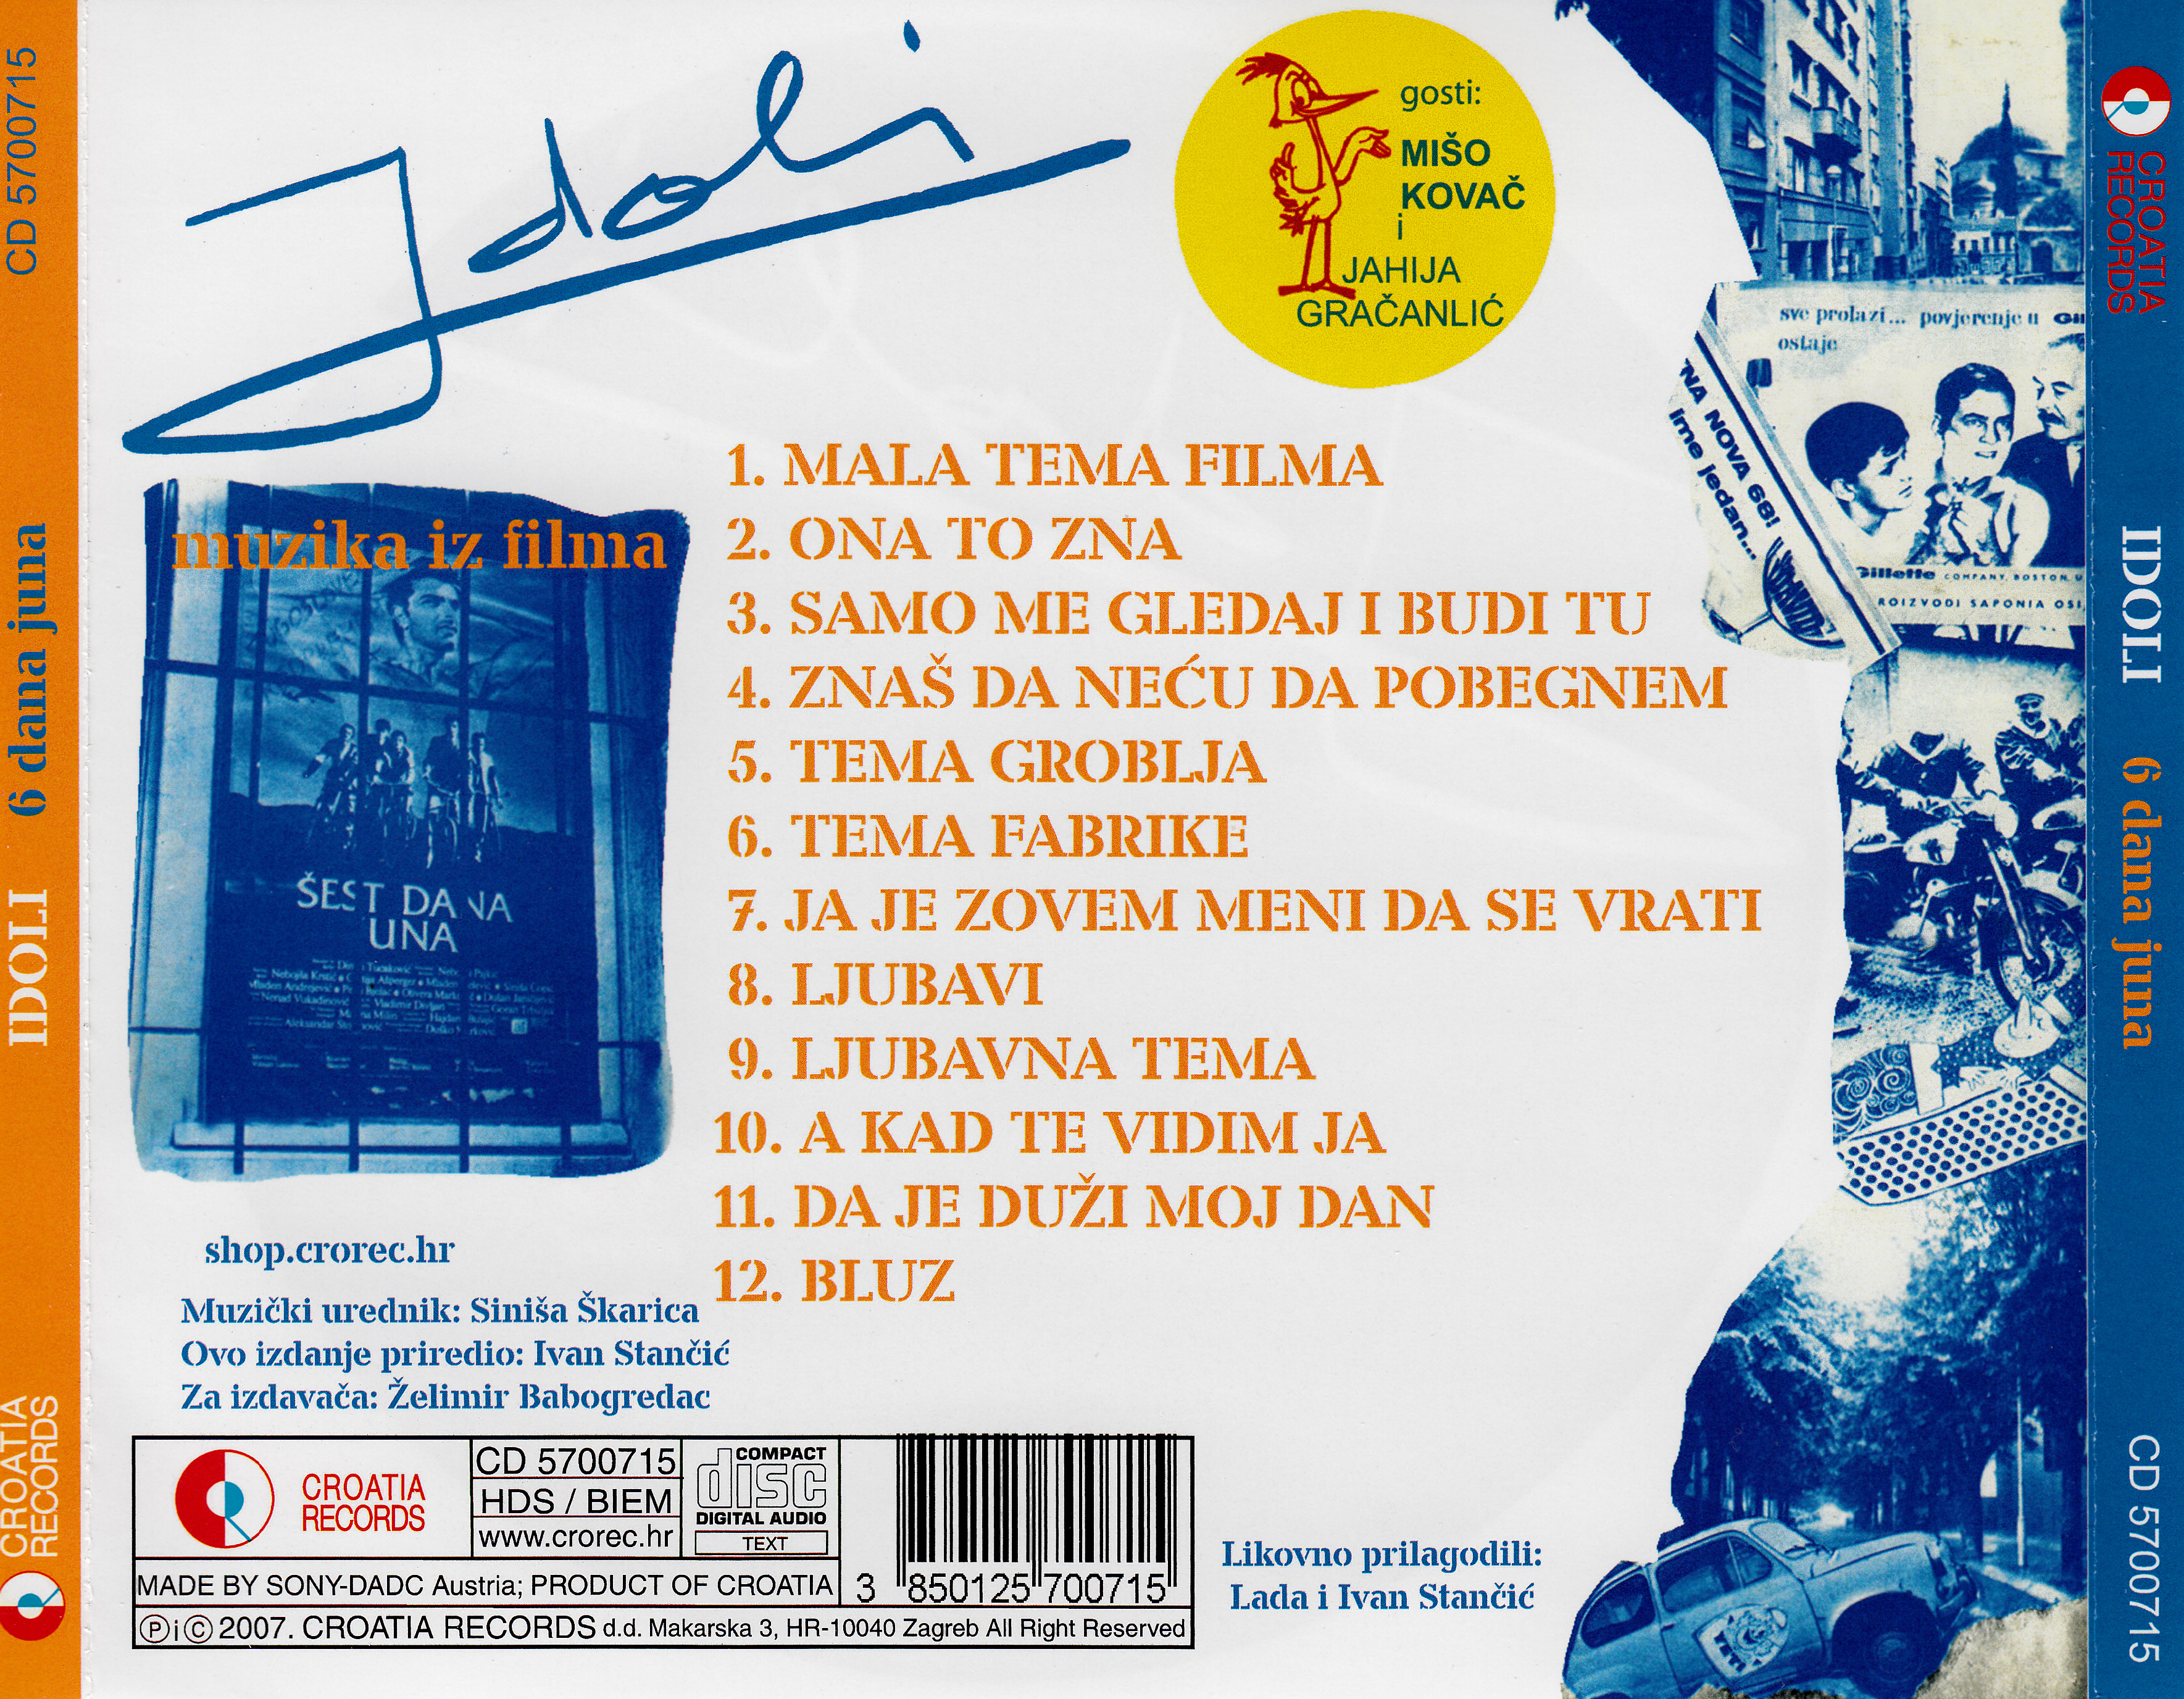 Idoli 1985 CD est dana juna zadnja